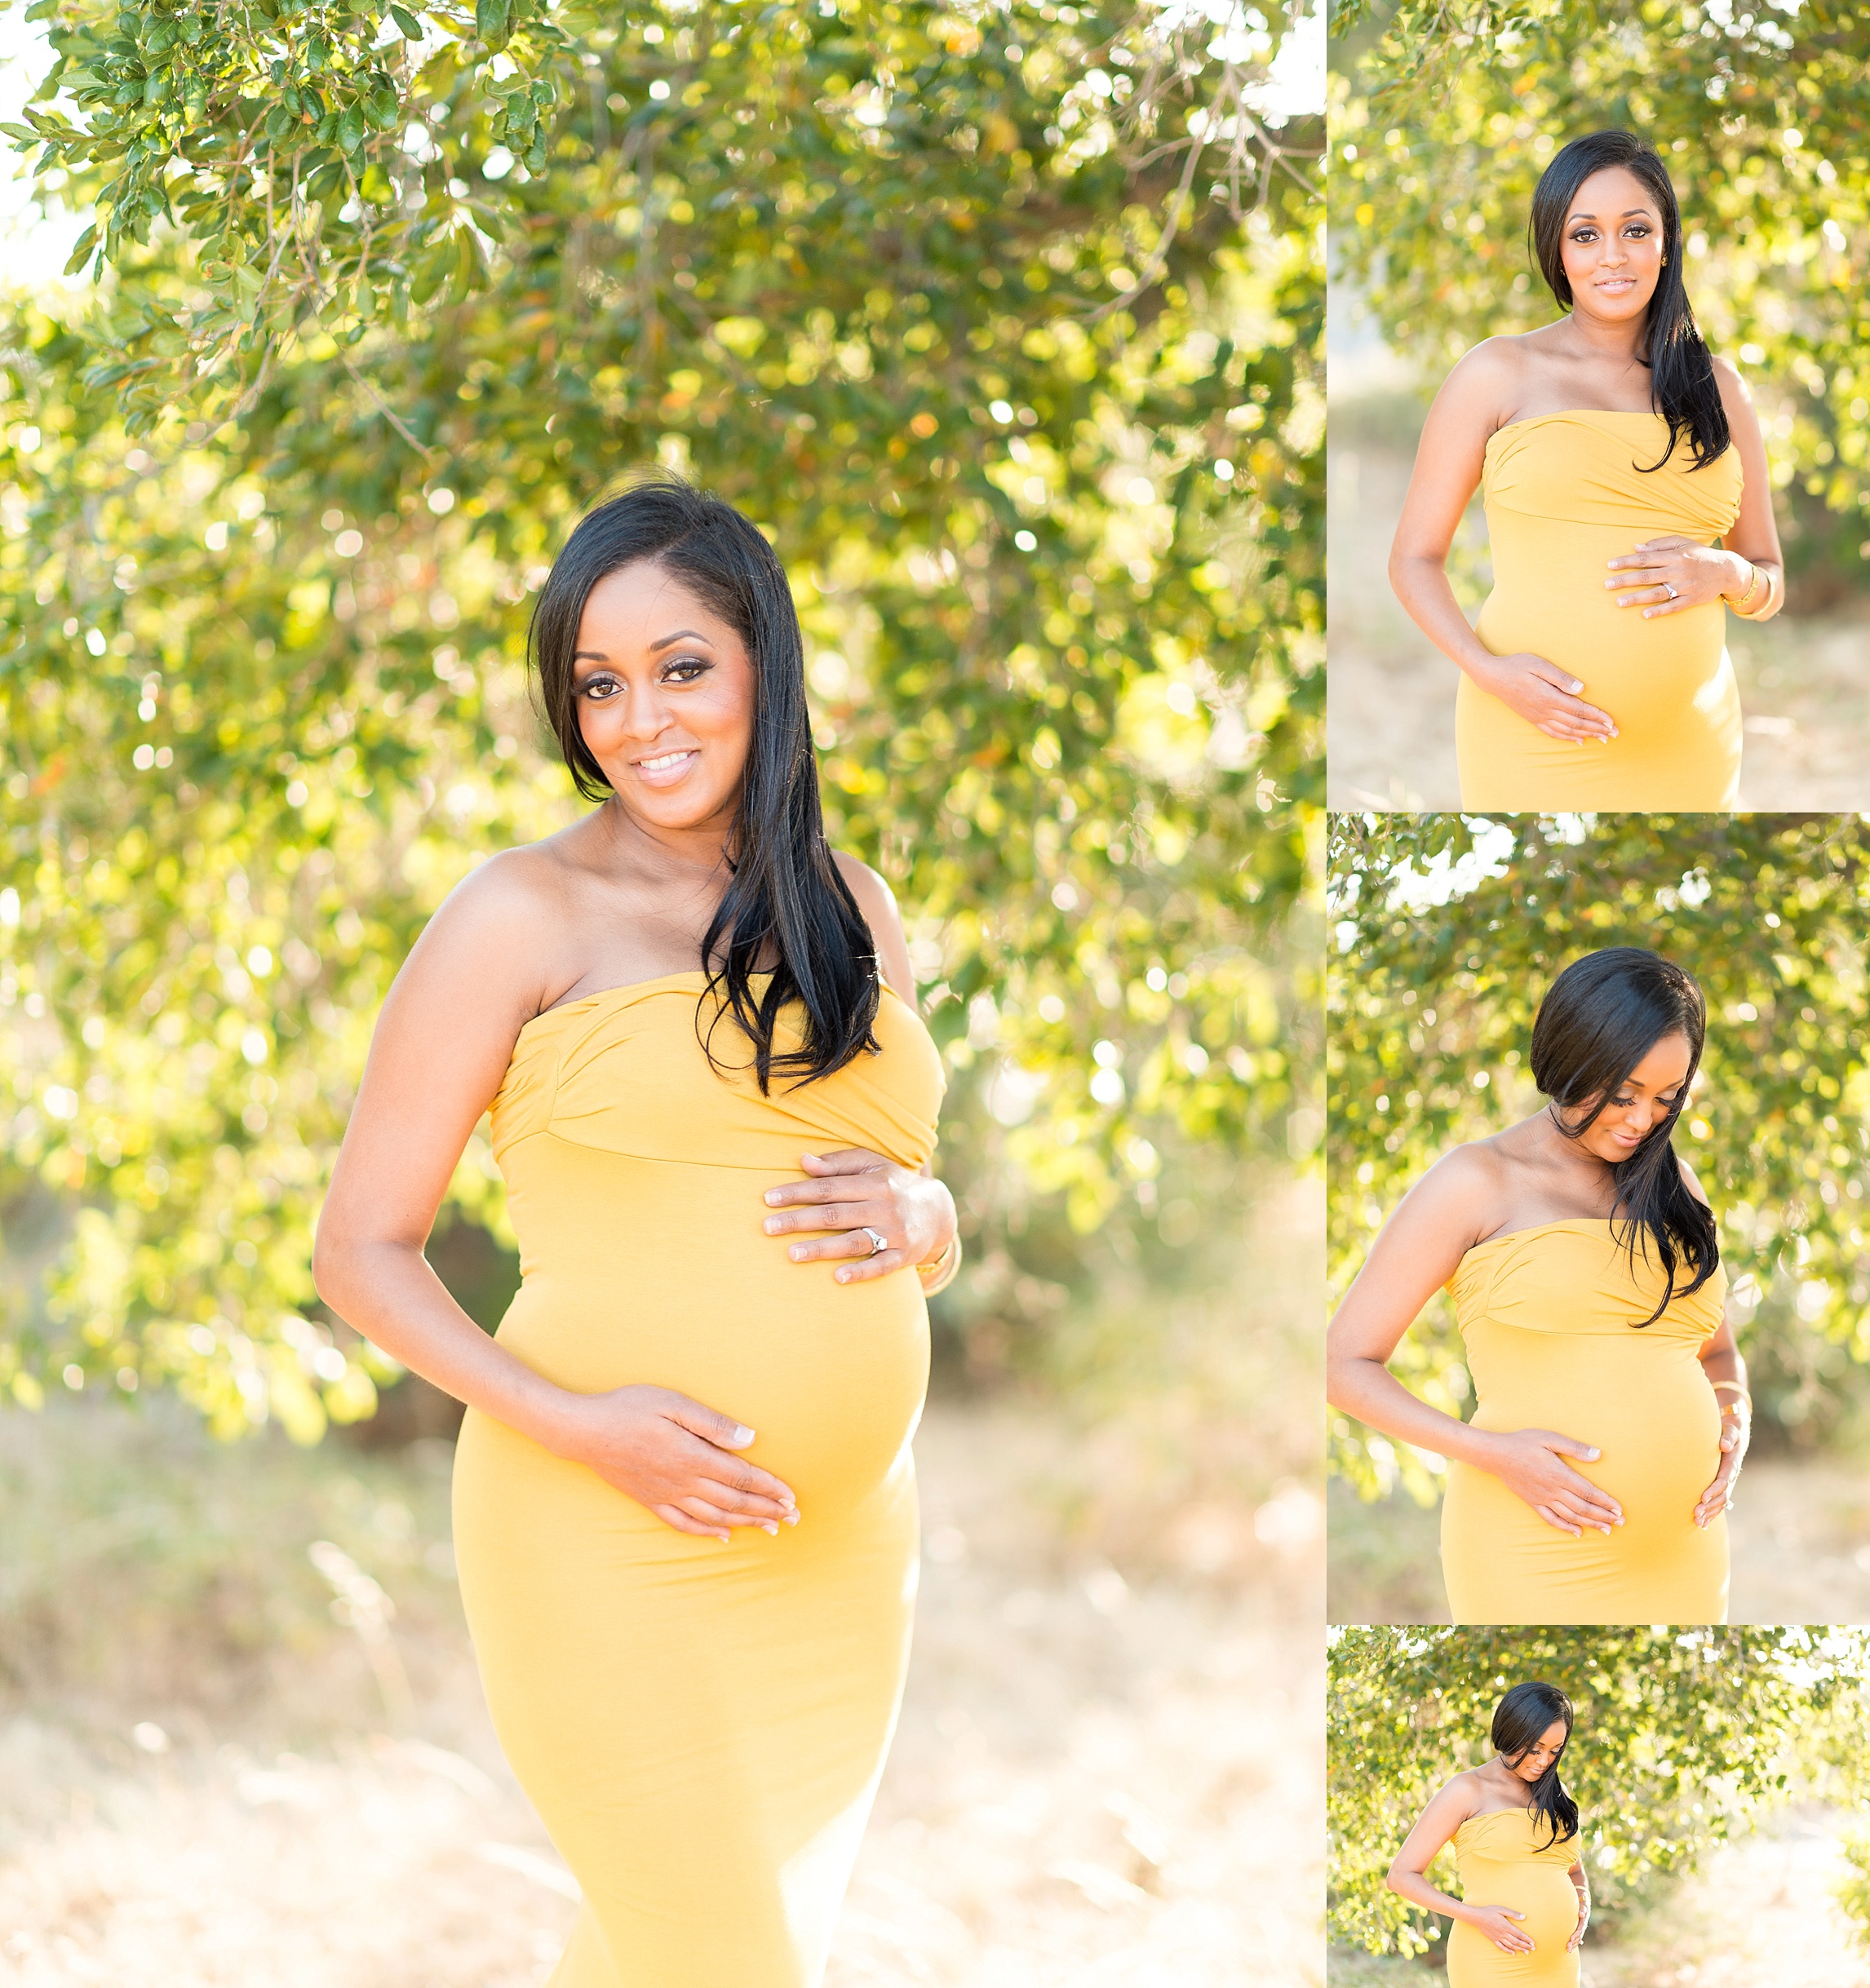 The S Family Maternity PhotoShoot { Bay Area Maternity Photos}